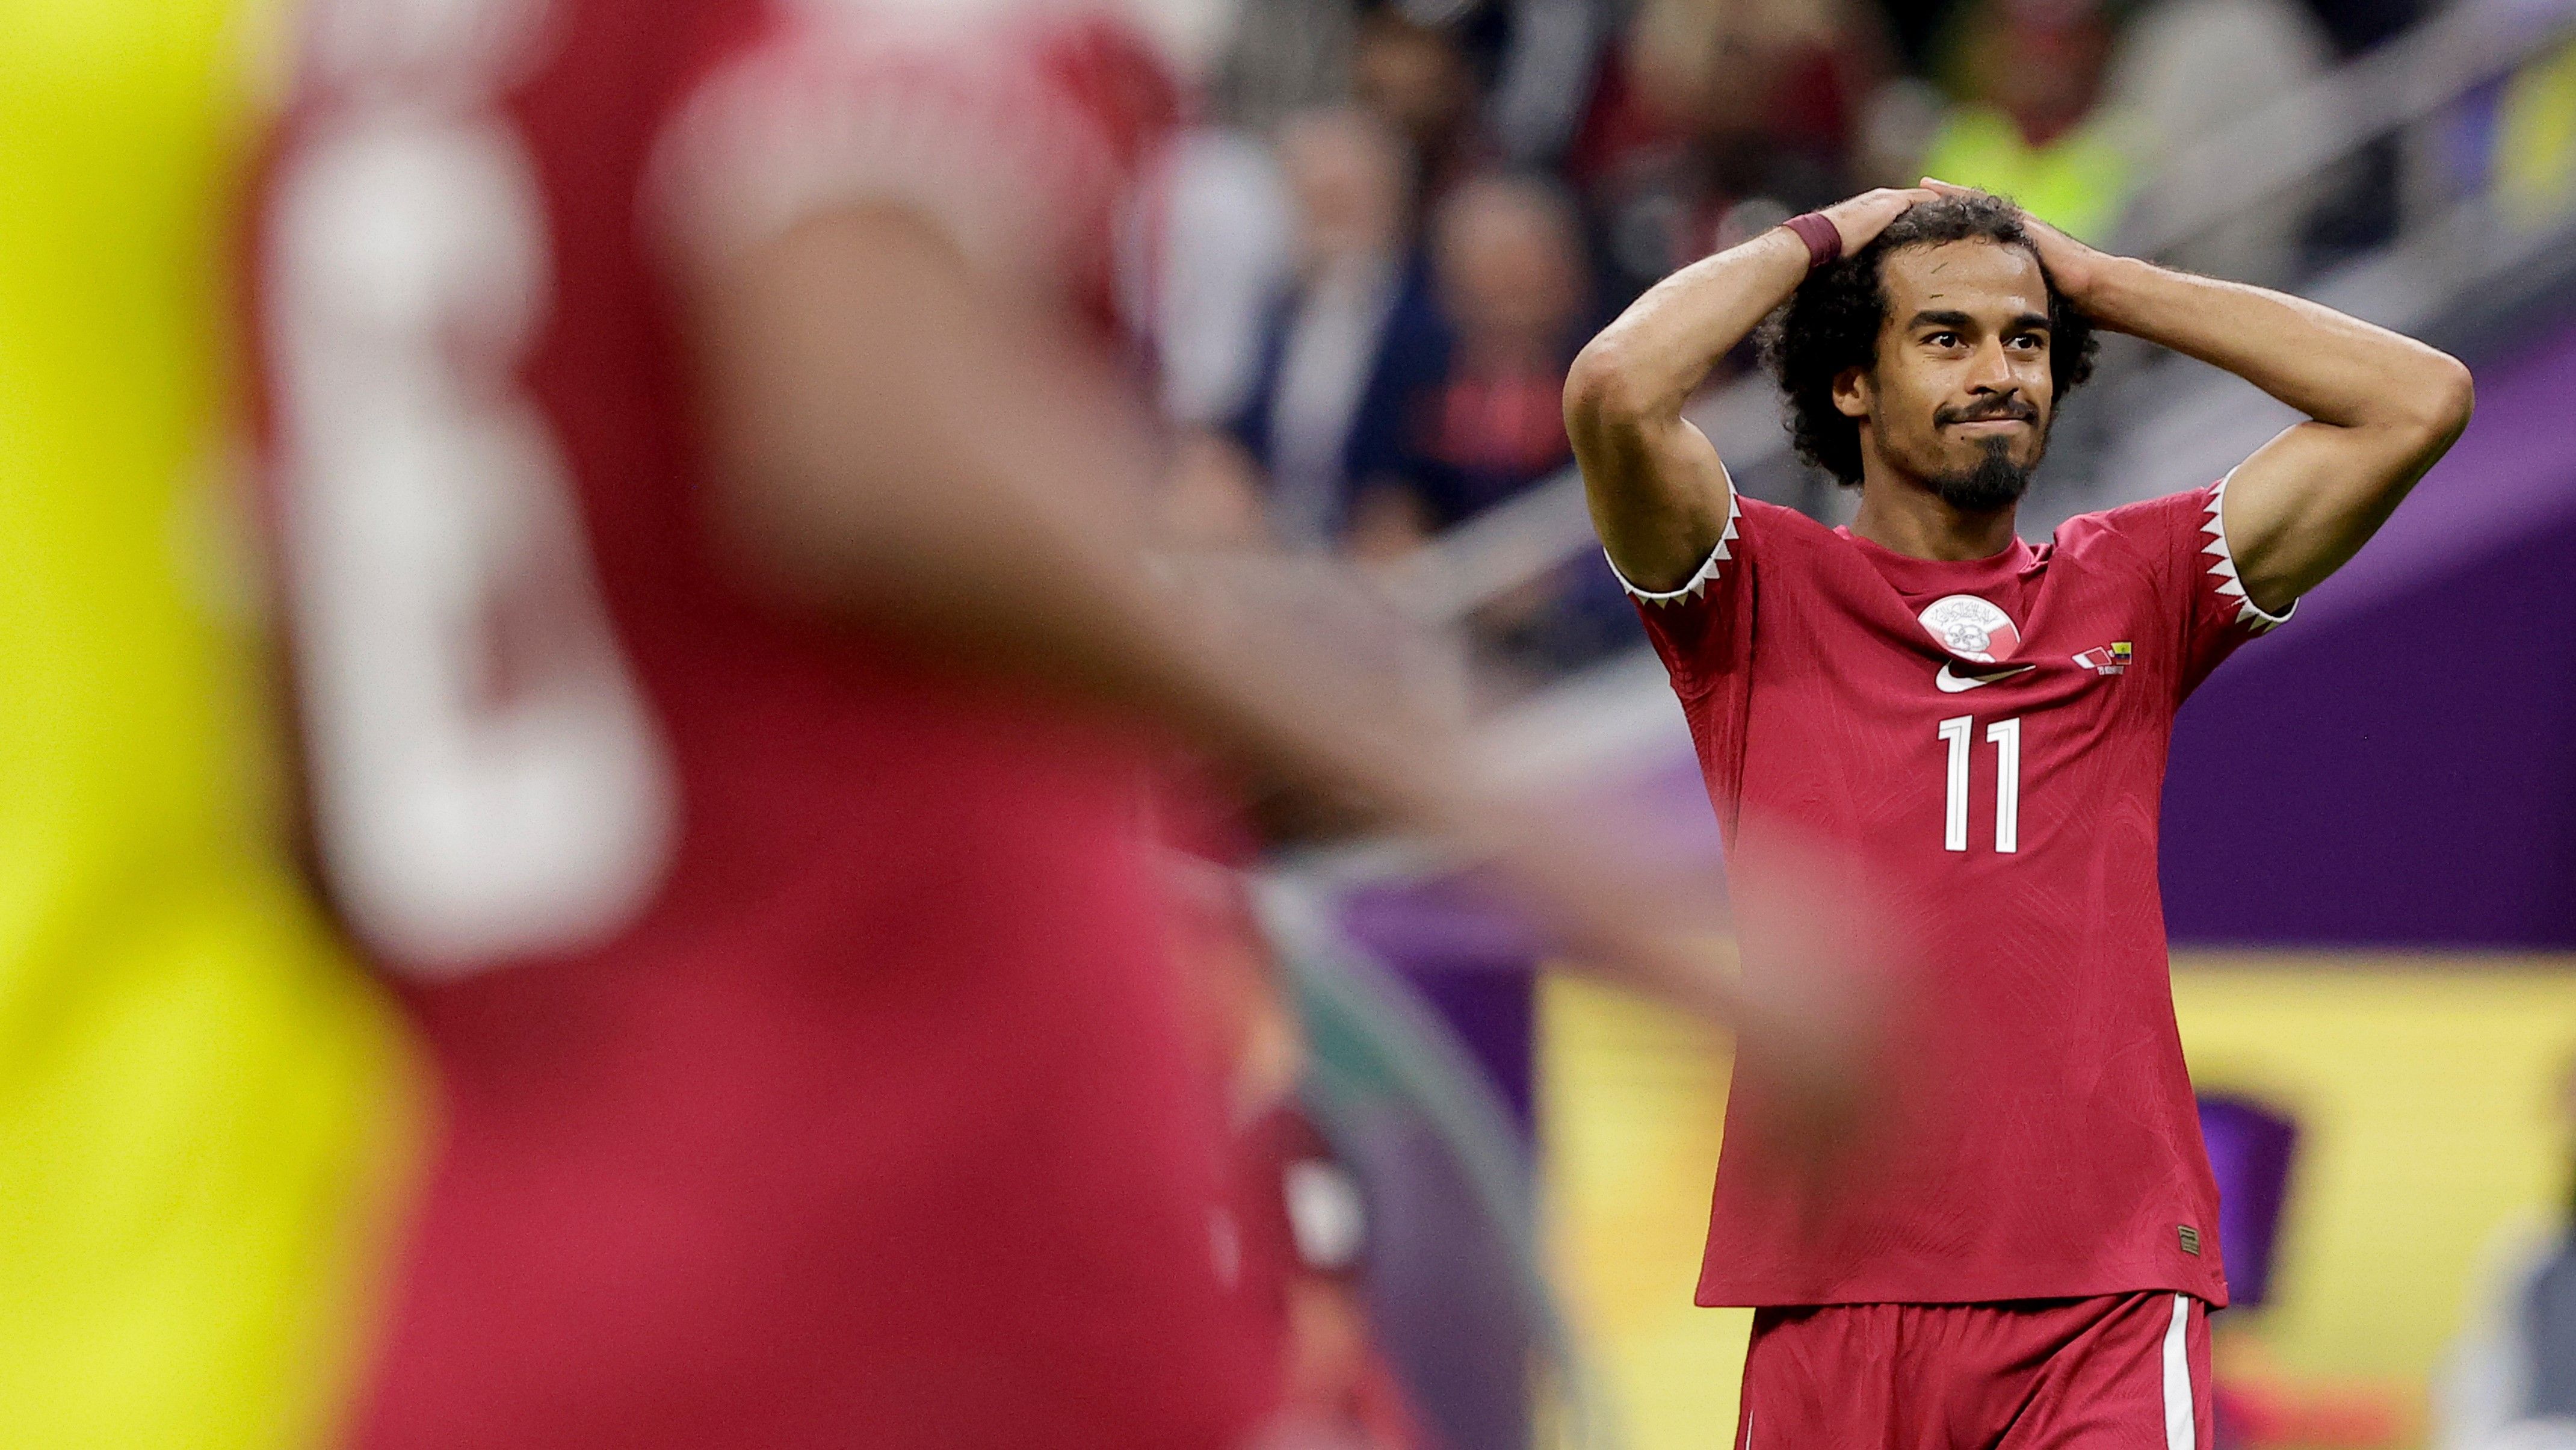 Катар с позором вошел в историю чемпионатов мира по футболу